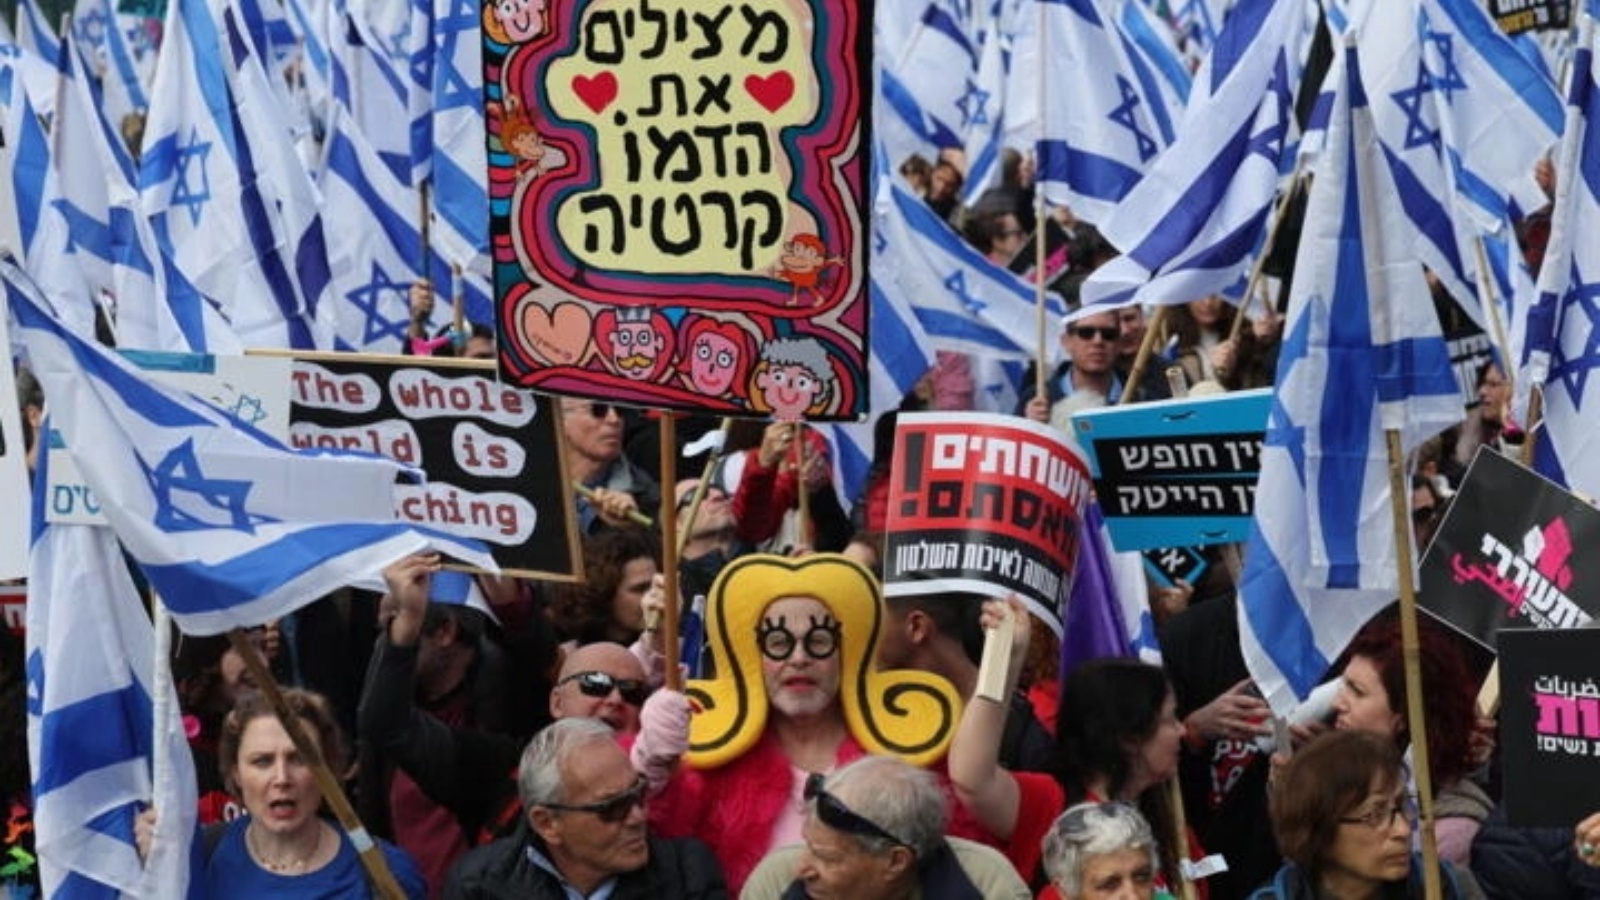 متظاهرون إسرائيليون يلوحون بالعلم الإسرائيلي ولافتات خط عليها شعارات ضد مفترحات تعديل النظام القضائي في إسرائيل وذلك أمام البرلمان الإسرائيلي (الكنيست) في 13 فبراير 2023